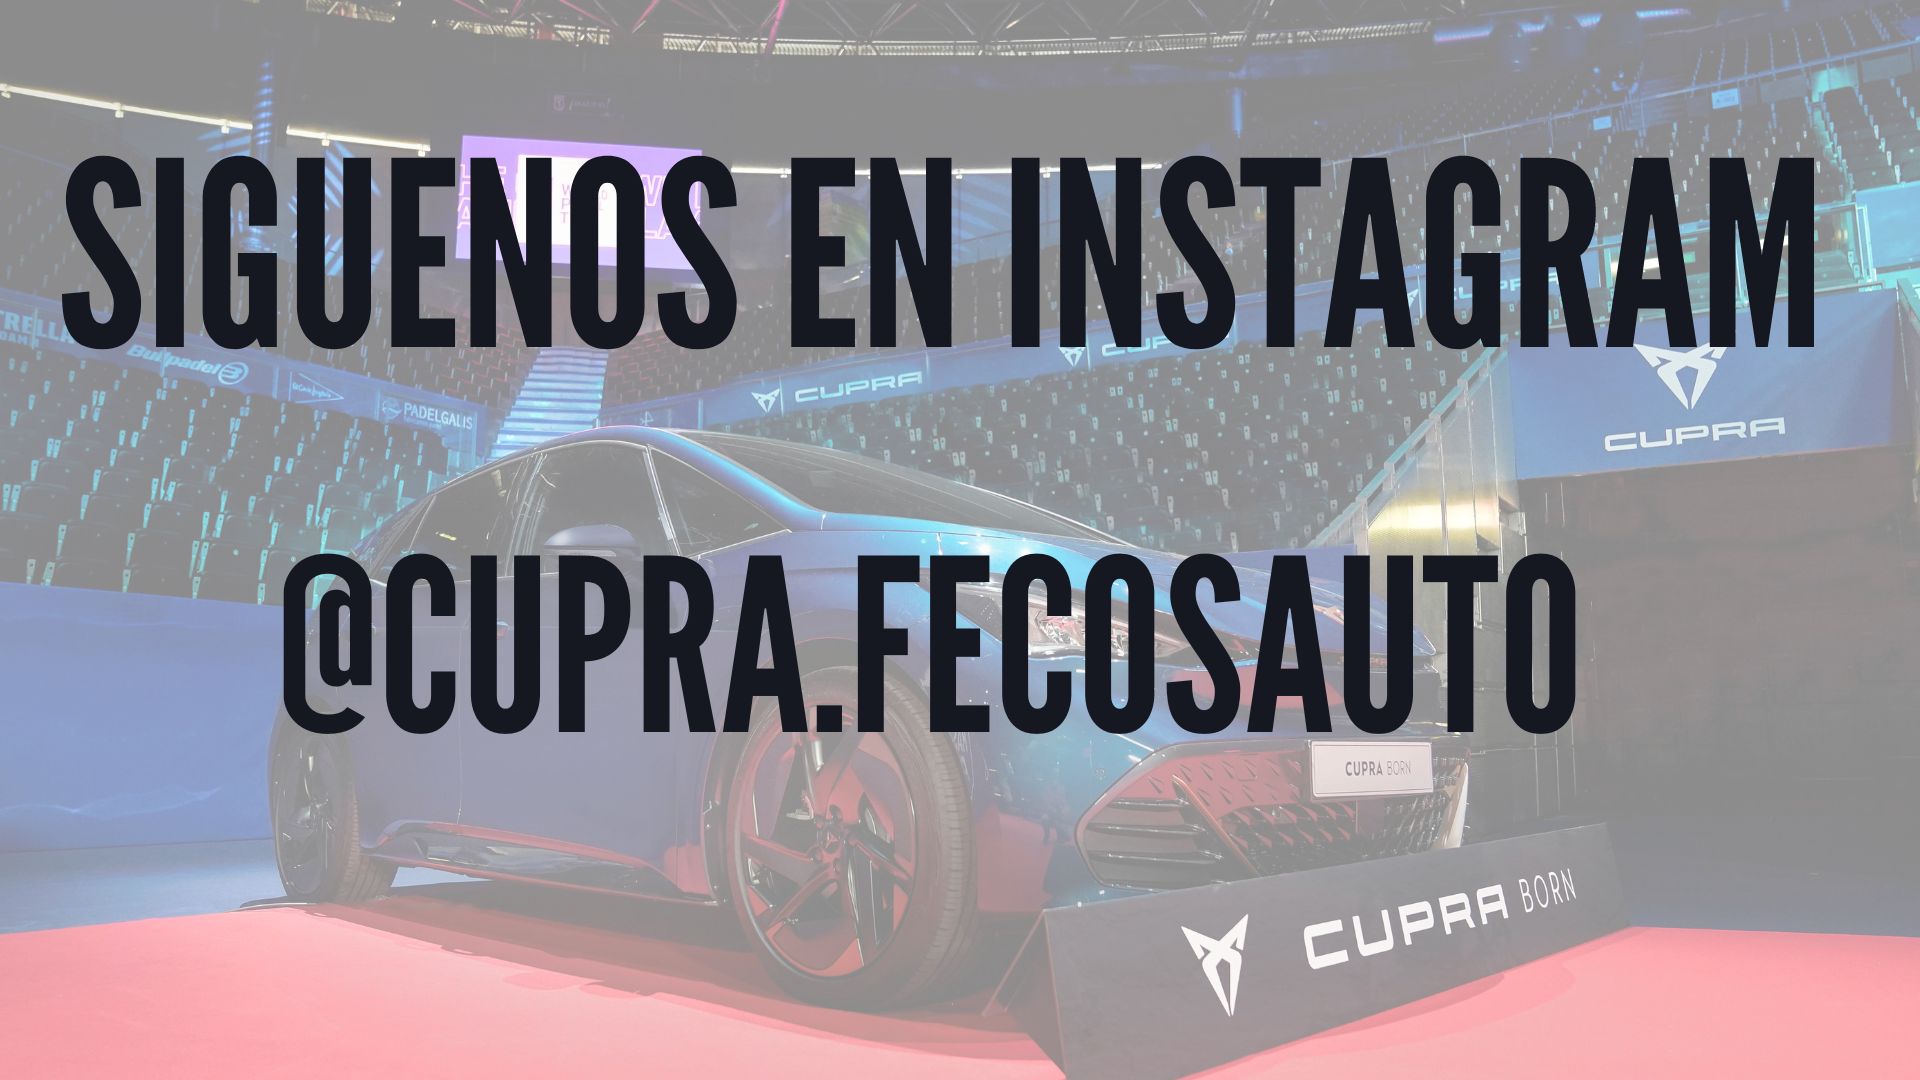 Instagram concesionario CUPRA Fecosauto